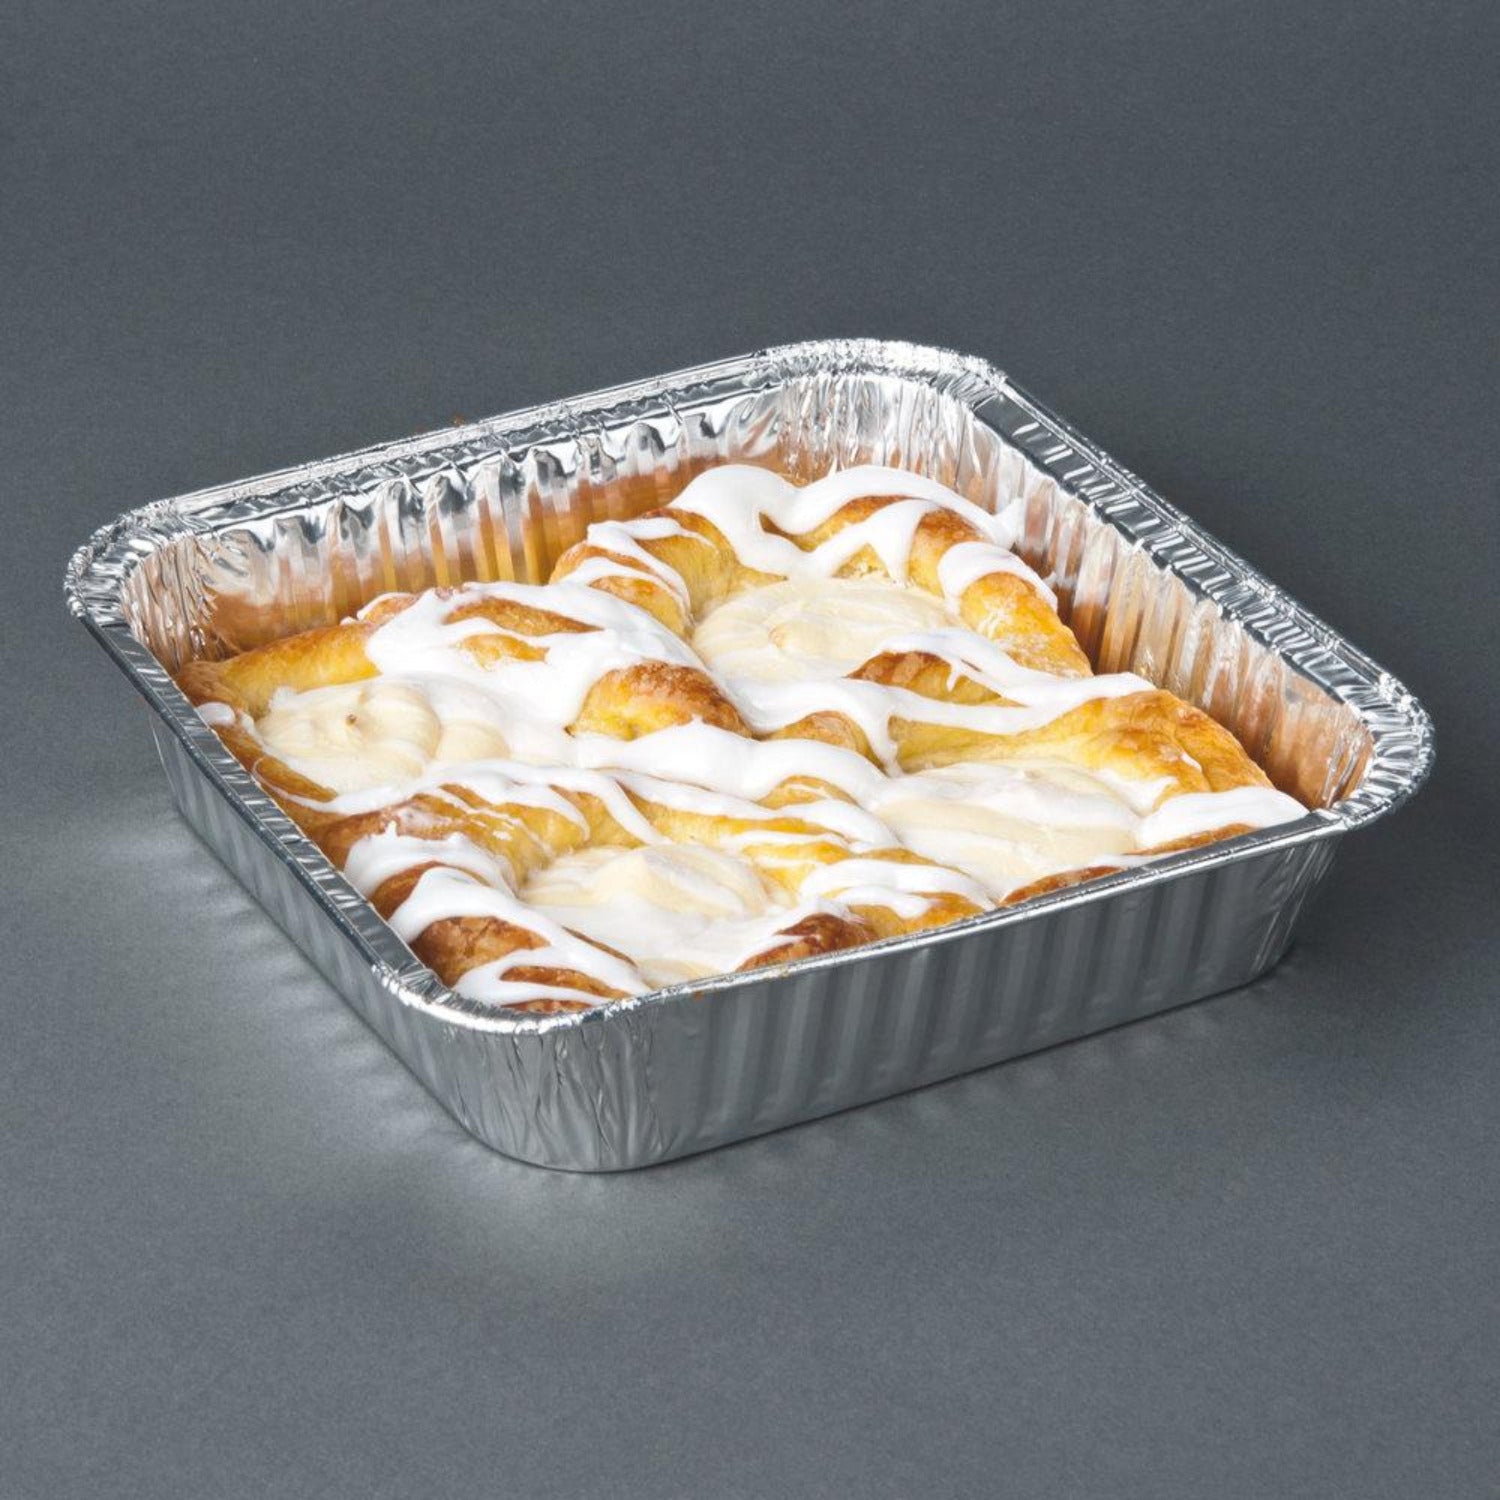 20 Count) 8 Square Disposable Aluminum Cake Pans - Foil Pans for Cooking,  Baki